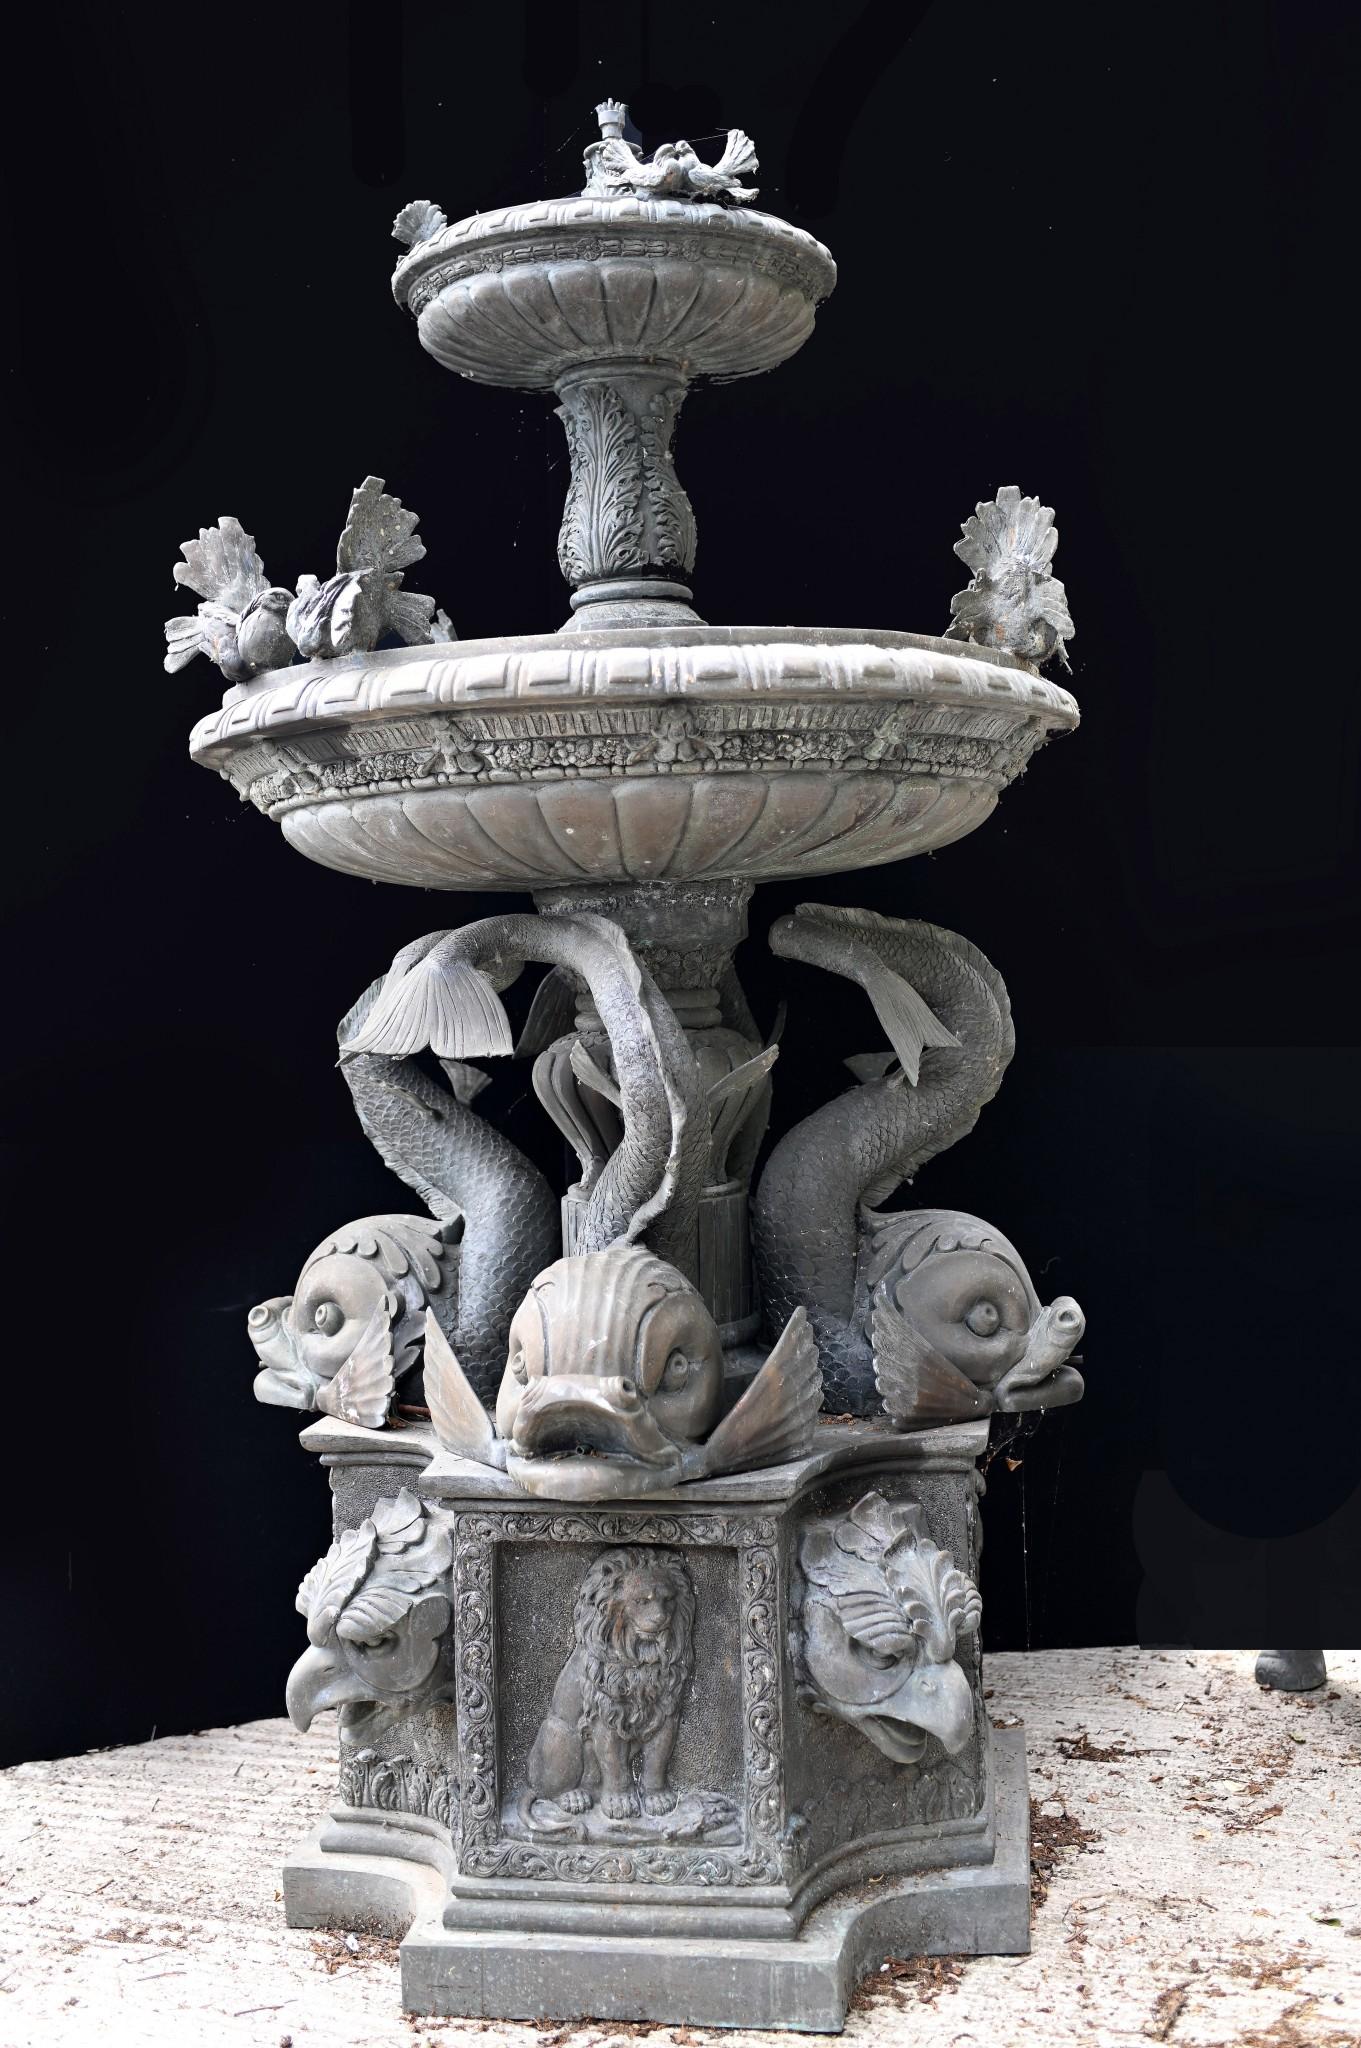 Wunderschöner antiker italienischer Gartenbrunnen aus Bronze
Großes Werk von klassischer Schönheit mit einer von Seeschlangen getragenen Hauptsäule
Wurde vermutlich aus einer Stadt in der Nähe von Triest in Italien geborgen
Zwei Stufen des Brunnens